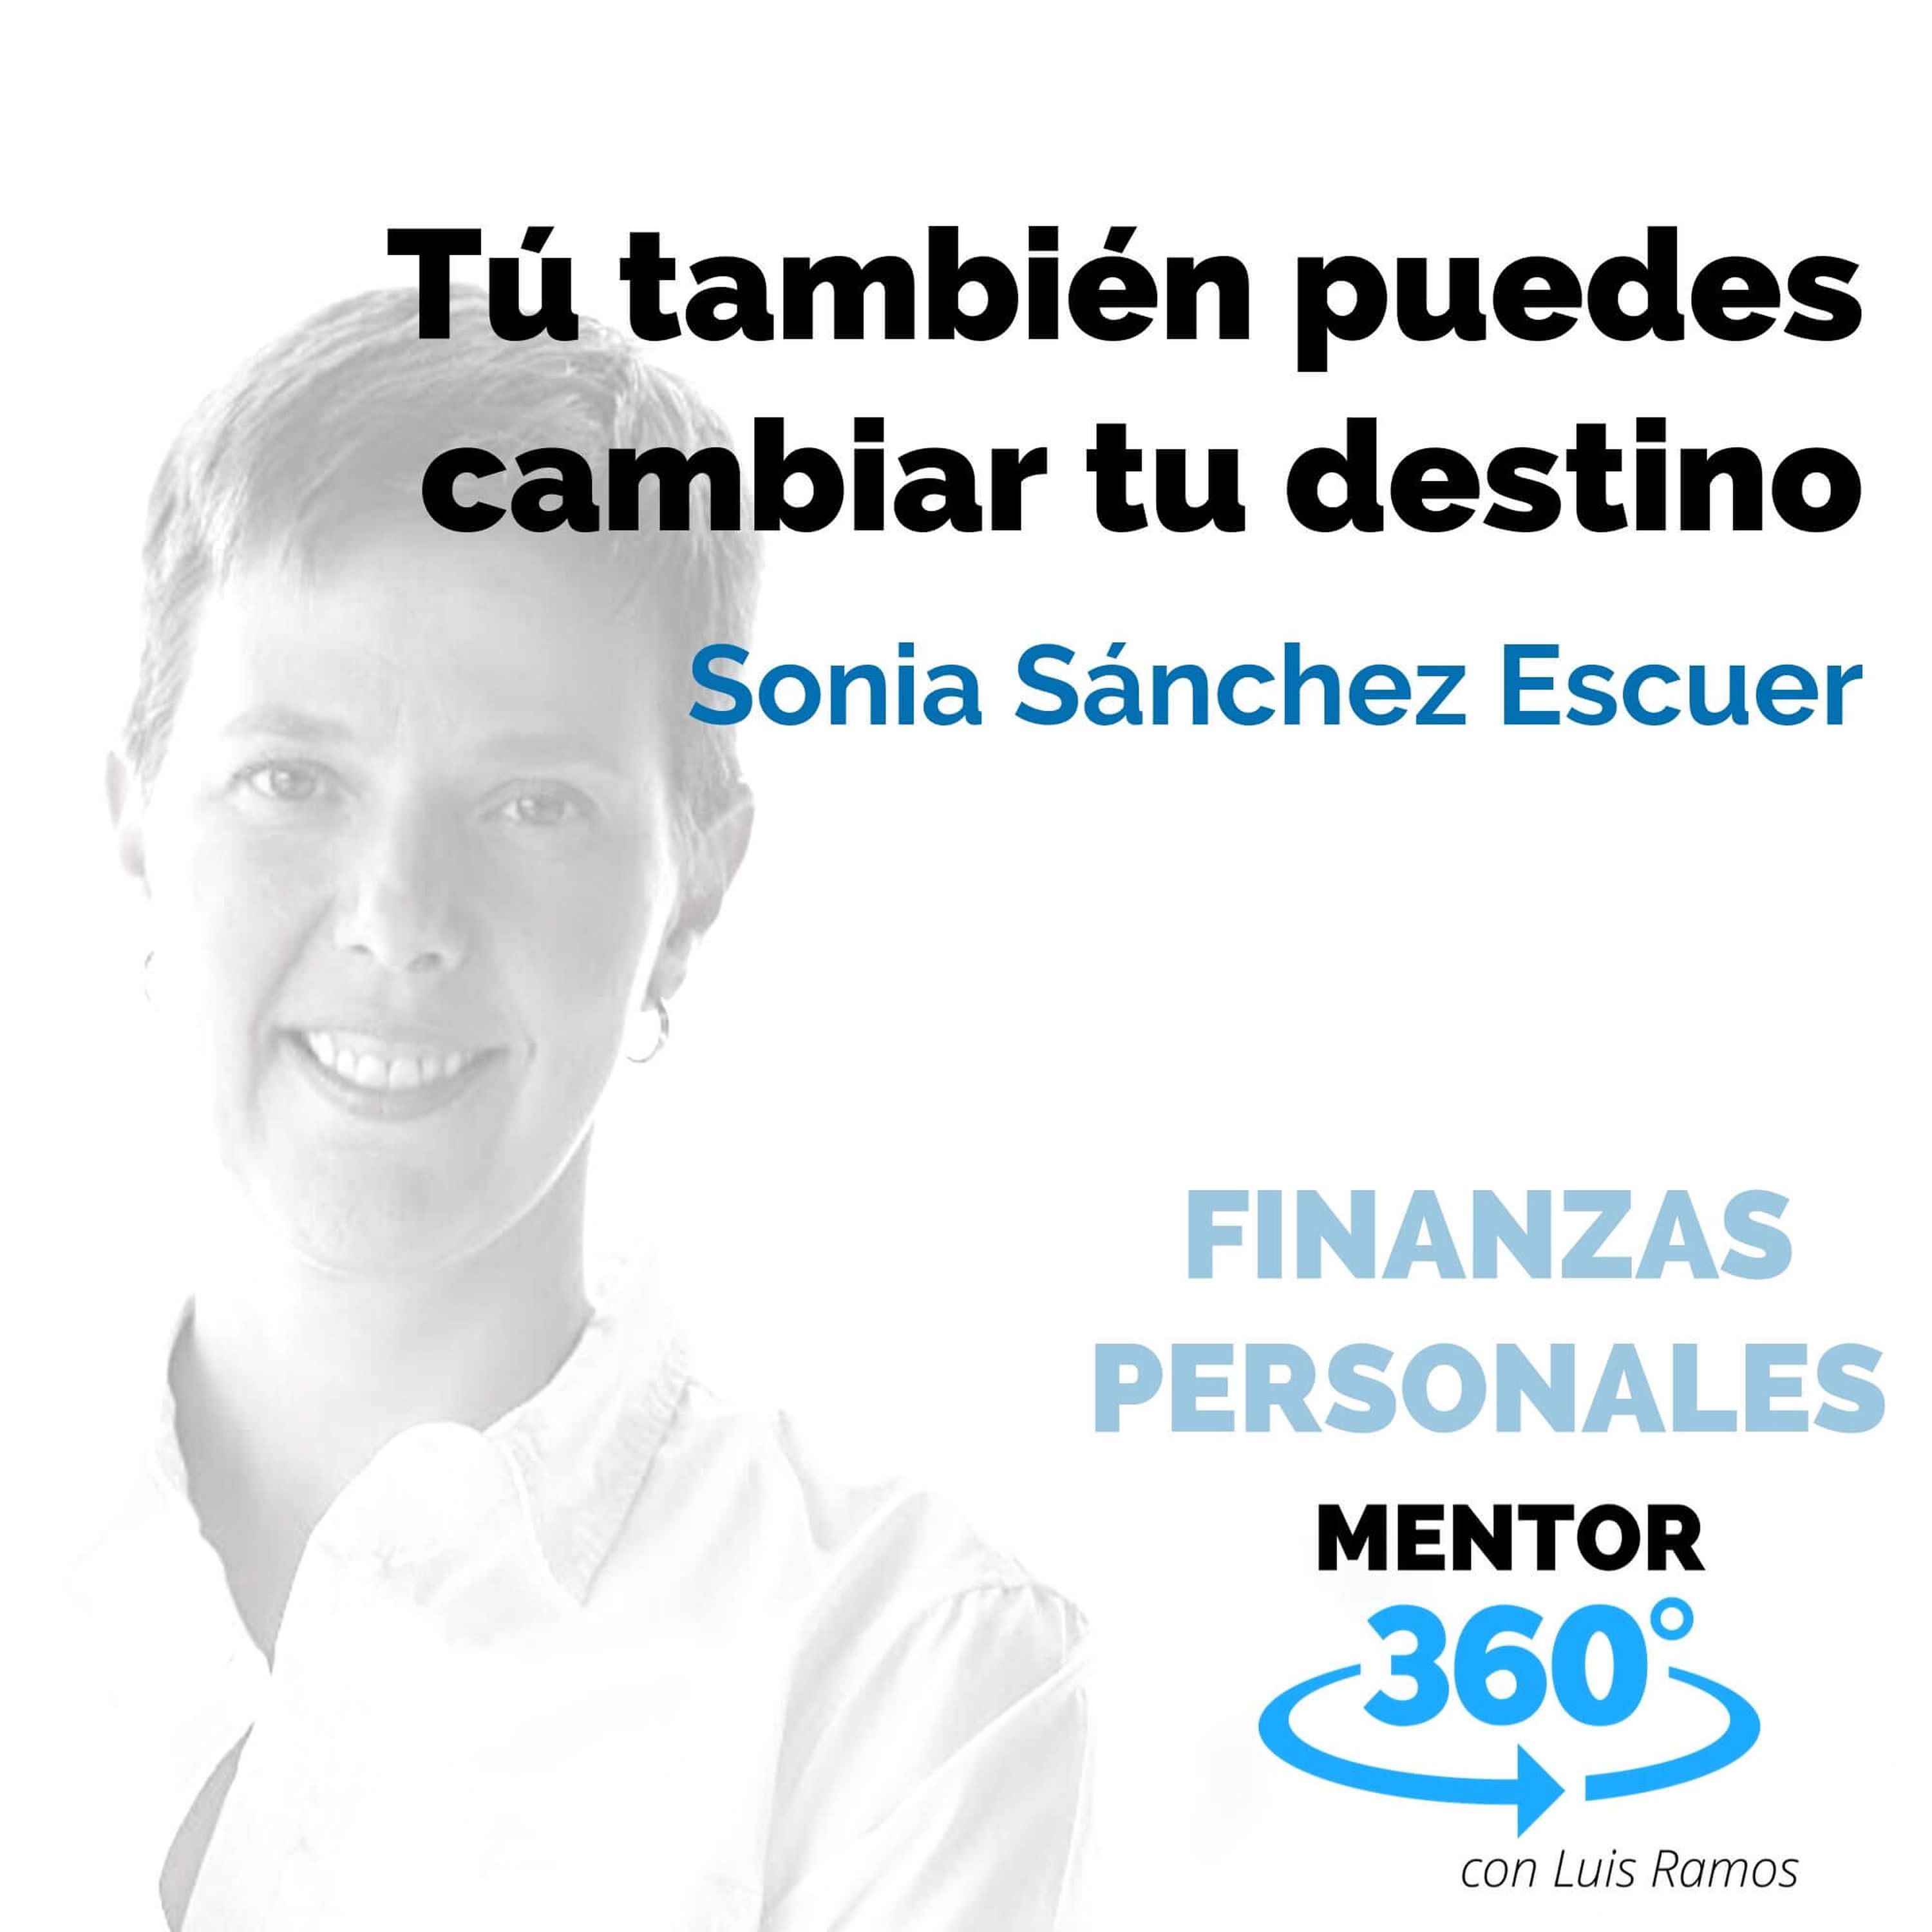 Tú también puedes cambiar tu destino, con Sonia Sánchez Escuer - FINANZAS PERSONALES